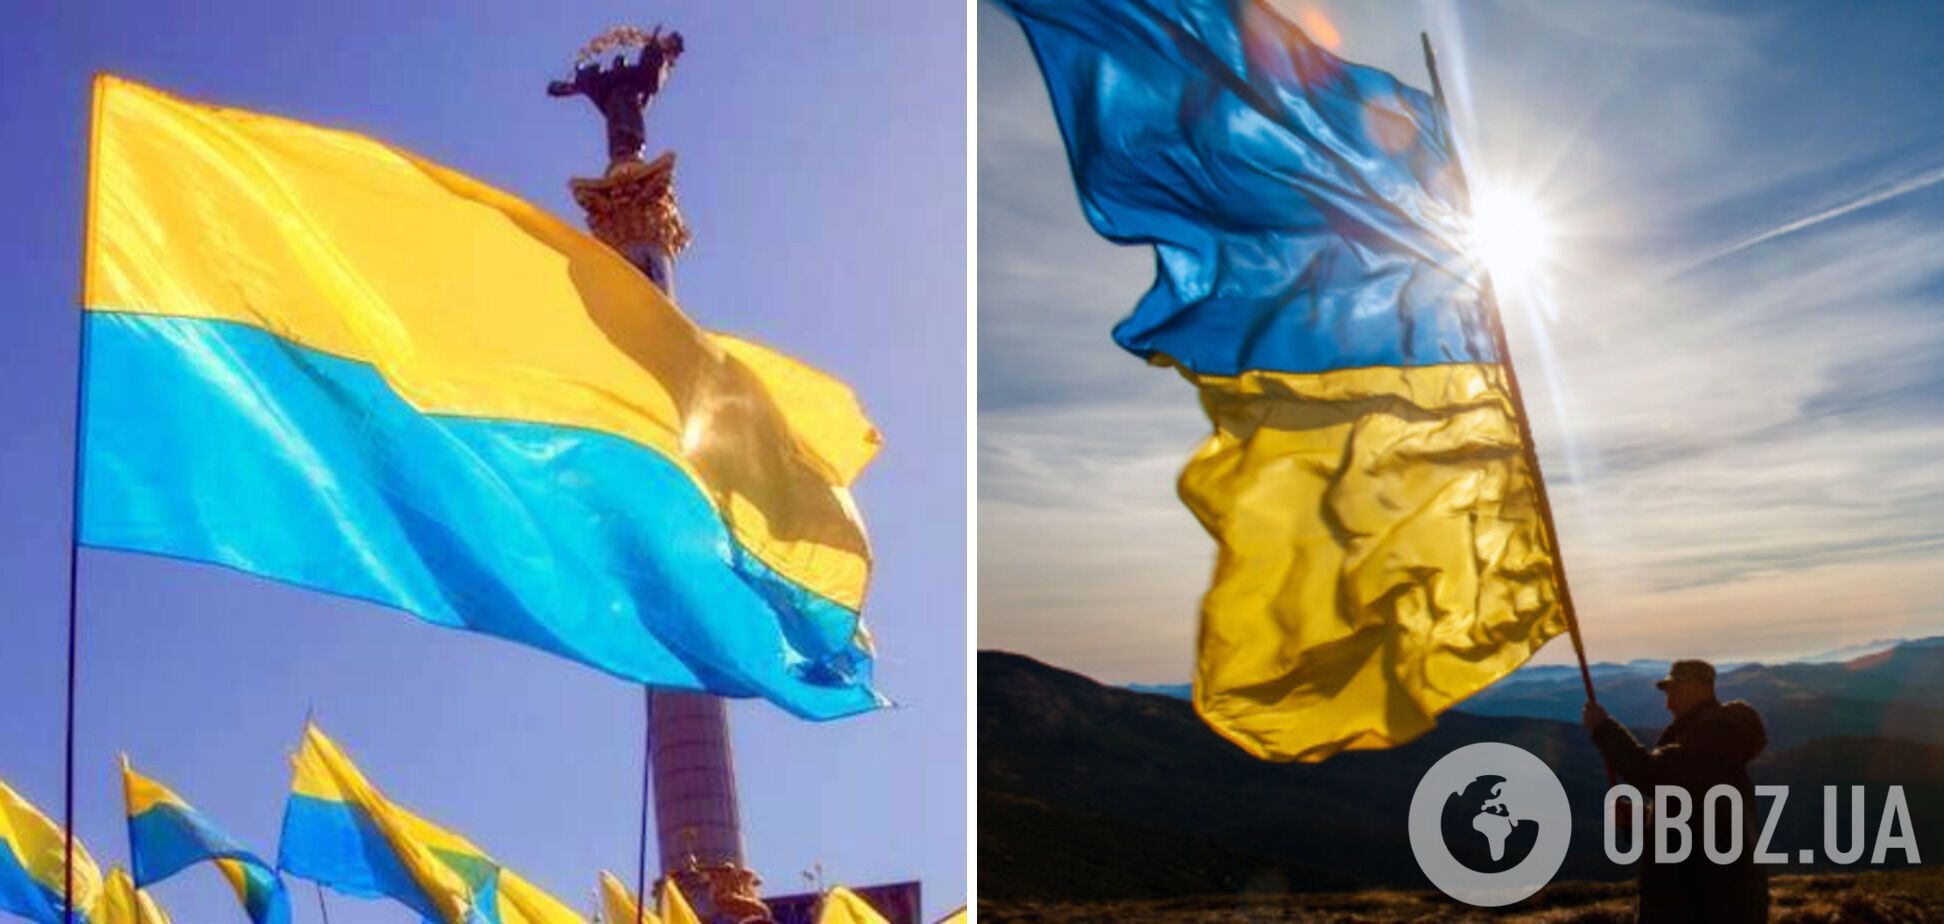 Слева желто-синяя вариация флага, приписываемая Грушевскому, а справа – привычный сине-желтый вариант, который использовали при Скоропадском.